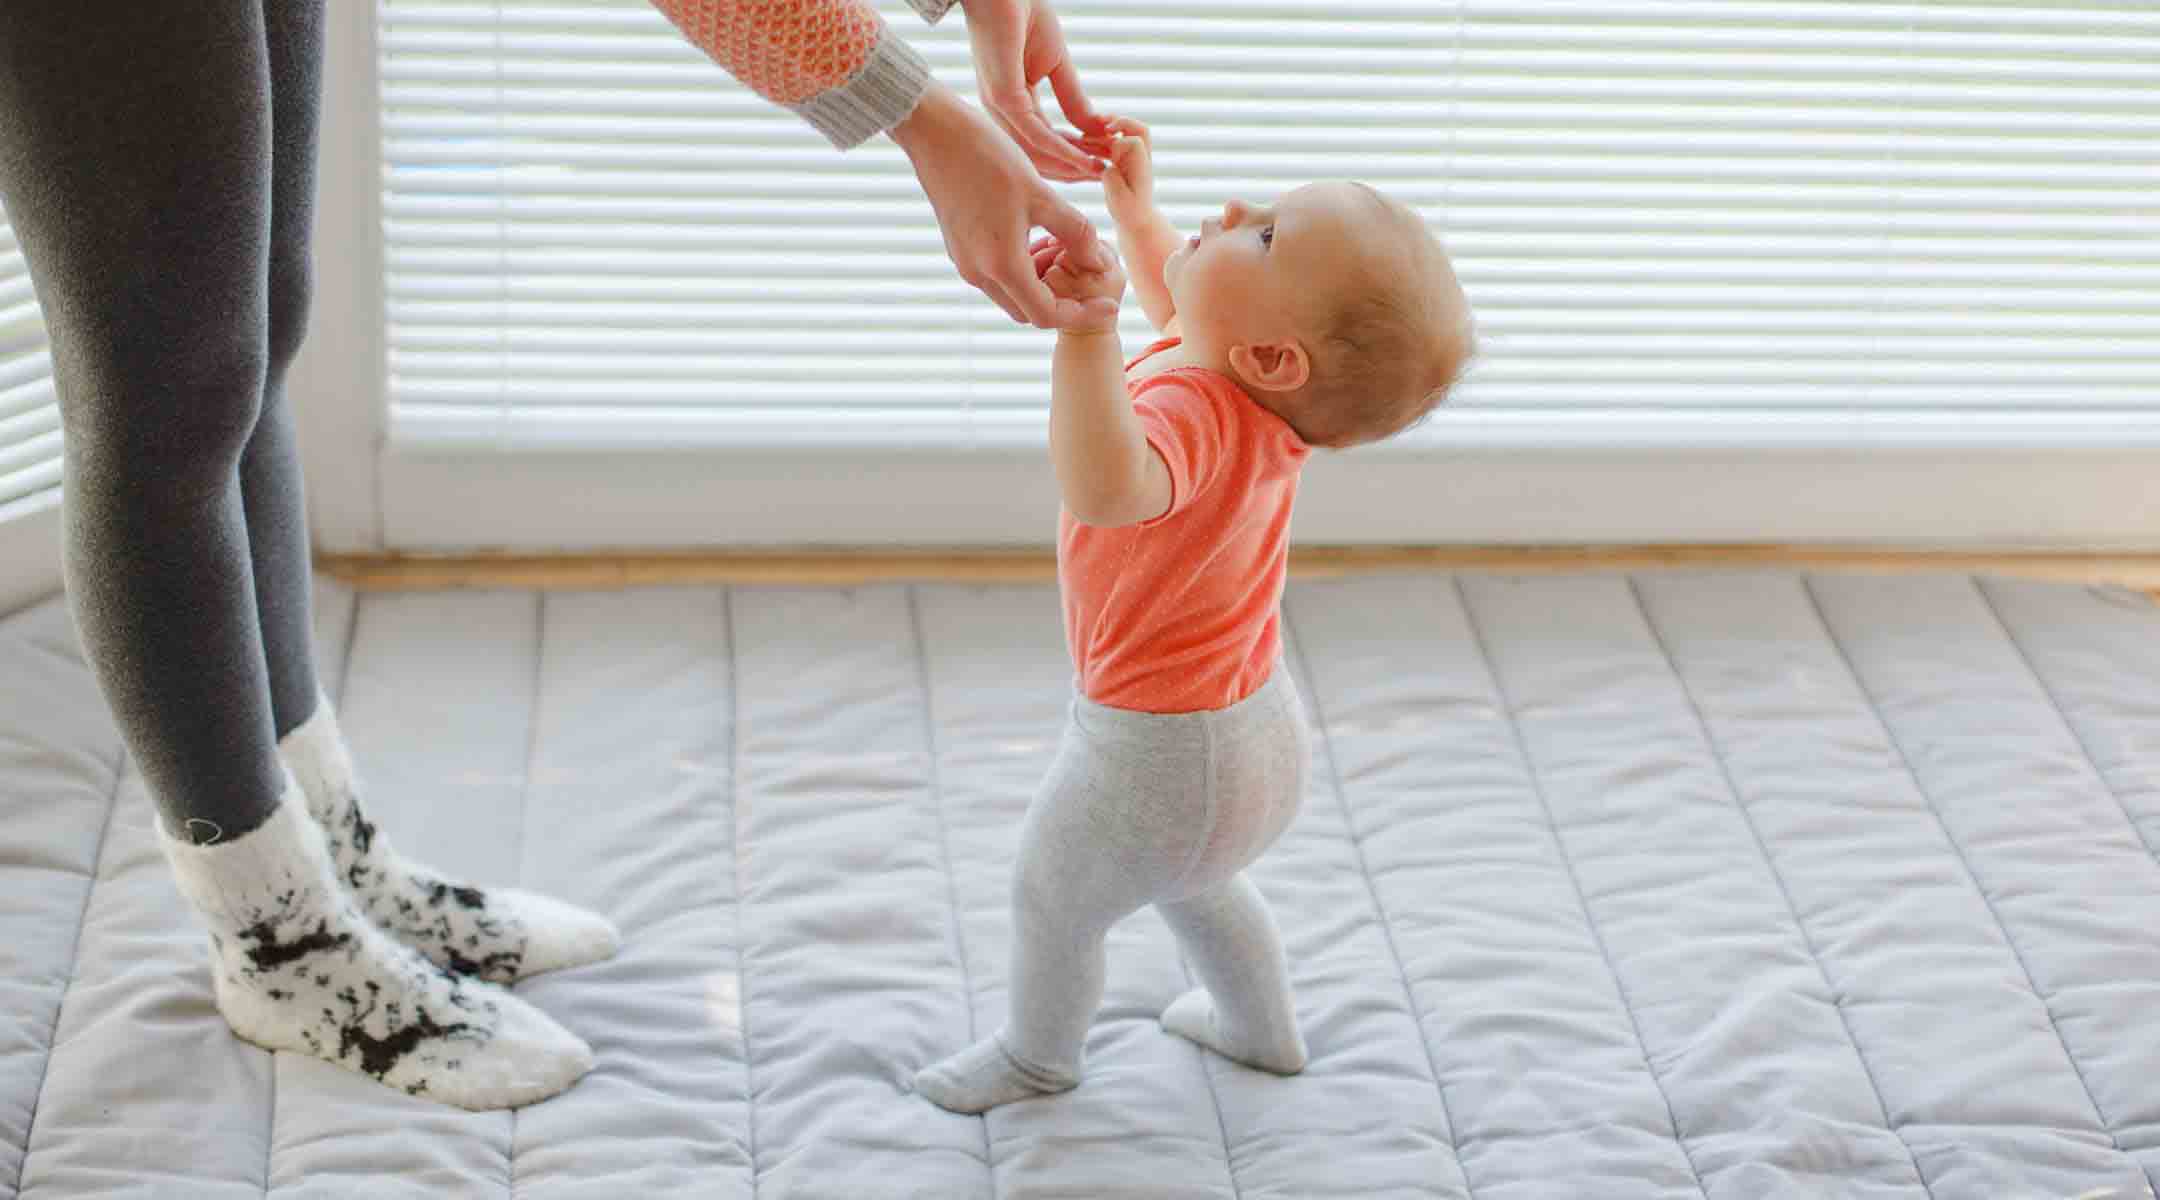 بازی‌های مفید برای رشد مغز نوزاد از 9 تا 12 ماهگی | ویکی هوش